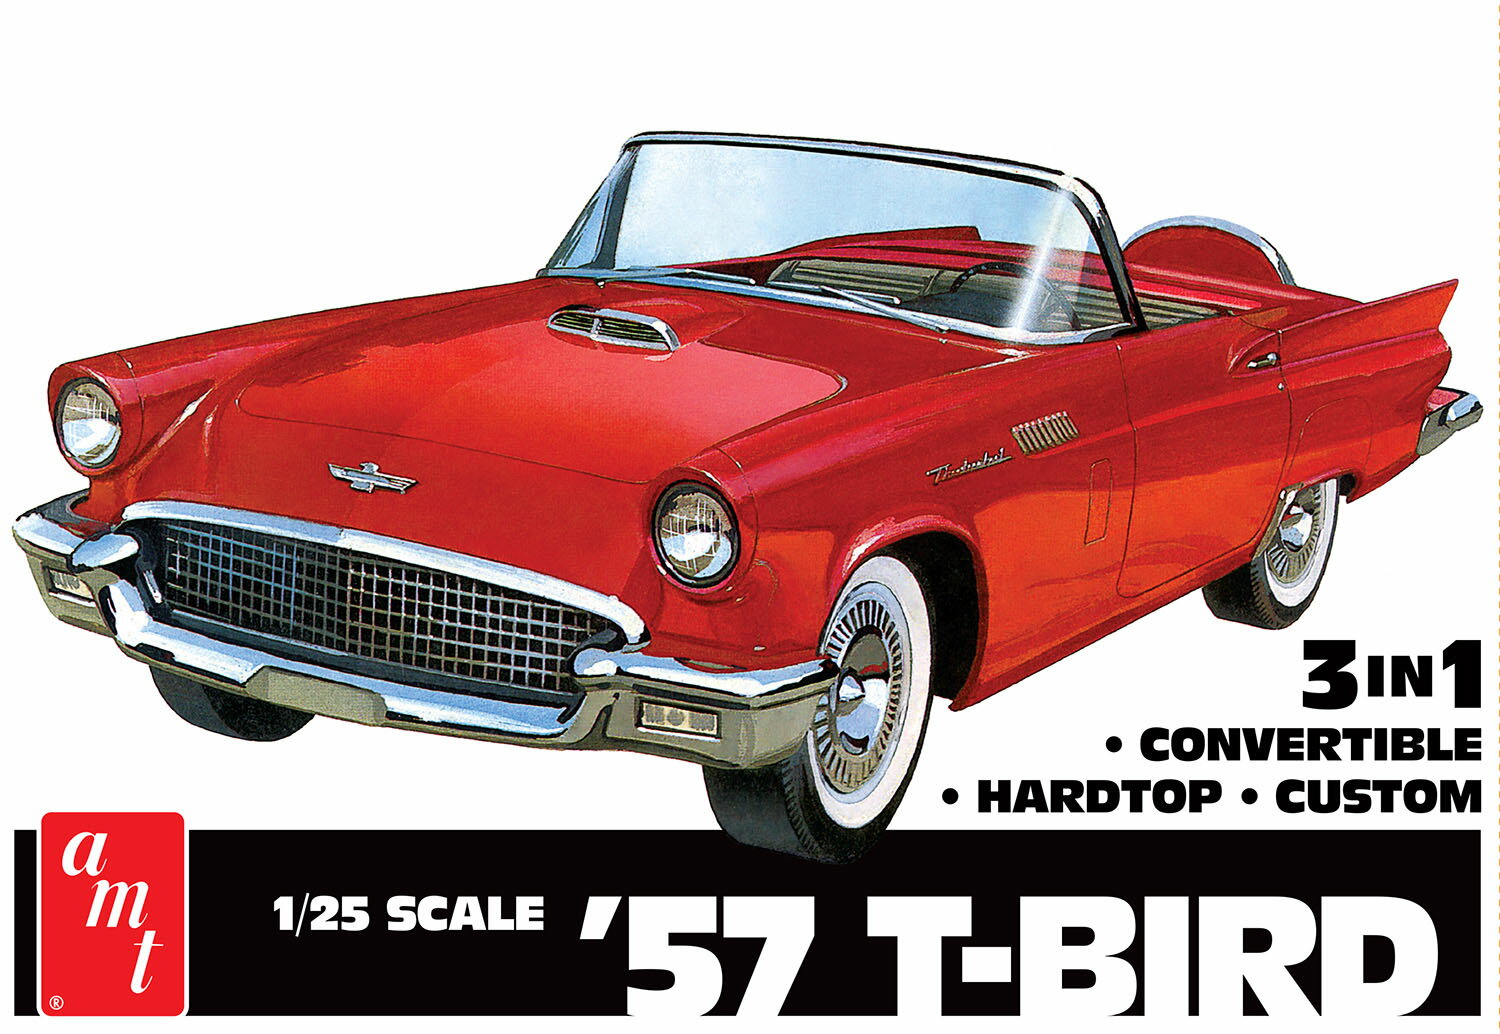 ●初代サンダーバードを3in1で楽しむ
アメリカのフォードが1955年から発売したスペシャリティカー、サンダーバードの1957年型を1/25スケールで再現したプラスチックモデル組み立てキットです。

実車について
フォードがラインアップしていたスペシャリティカーの一つがフォード・サンダーバードです。
最初のモデルは1954年のデトロイトショーで発表され、翌55年から発売されました。
フロントエンジンリヤドライブの2シーターボディを持ち、取り外し式のハードトップを装備。
ハードトップにはポートホールと呼ばれる丸窓が設けられスタイリングの特徴となって人気を集めました。
1957年型は初代モデルの最終年式モデルです。
57年式ではリアのオーバーハングが延長されたり、テールフィンが追加されるなどの変更が加えられ、エンジンは4.8リッターのV8、5.1リッターのV8が用意されました。
シボレーのコルベットの対抗馬として位置づけられながらラグジュアリーカーとしての性格も付加したことから女性にも人気を集めたのです。

モデルについて
モデルはフォードのスペシャリティカー、サンダーバードの1957年型を1/25スケールで再現したプラスチックモデル組み立てキットです。
ラグジュアリームードも漂う2シーターのボディスタイルを実感たっぷりにモデル化しています。
キットはハードトップ仕様とコンバーチブル仕様、さらにカスタム仕様を選んで組み立てられる3in1キット。
サンダーバードのお好きなスタイルを選んで組み立てられるのが楽しみです。
フロントのボンネットは取り外しが可能で、もちろんボンネットの下にはV型8気筒エンジンもモデル化されています。
配線などのディテールアップに腕をふるってみるのも良いでしょう。
また、フロントバンパー、グリル、ホイールなど、メッキパーツで仕上がりを高めます。
シャーシは立体感あふれる彫刻表現やサスペンションパーツなどで仕上がりはリアリティも十分です。
また、バスタブ式のインテリアもシート、ダッシュボードとステアリングパーツなど、当時の雰囲気も味わえます。
アメ車ファンには見逃せないキットです。

●1/25スケールで1957年型のフォード・サンダーバードを再現
●V型8気筒エンジンも再現されたフルディテールキット
●ハードトップ、コンバーチブル、カスタムを選べる3in1【対象年齢】：